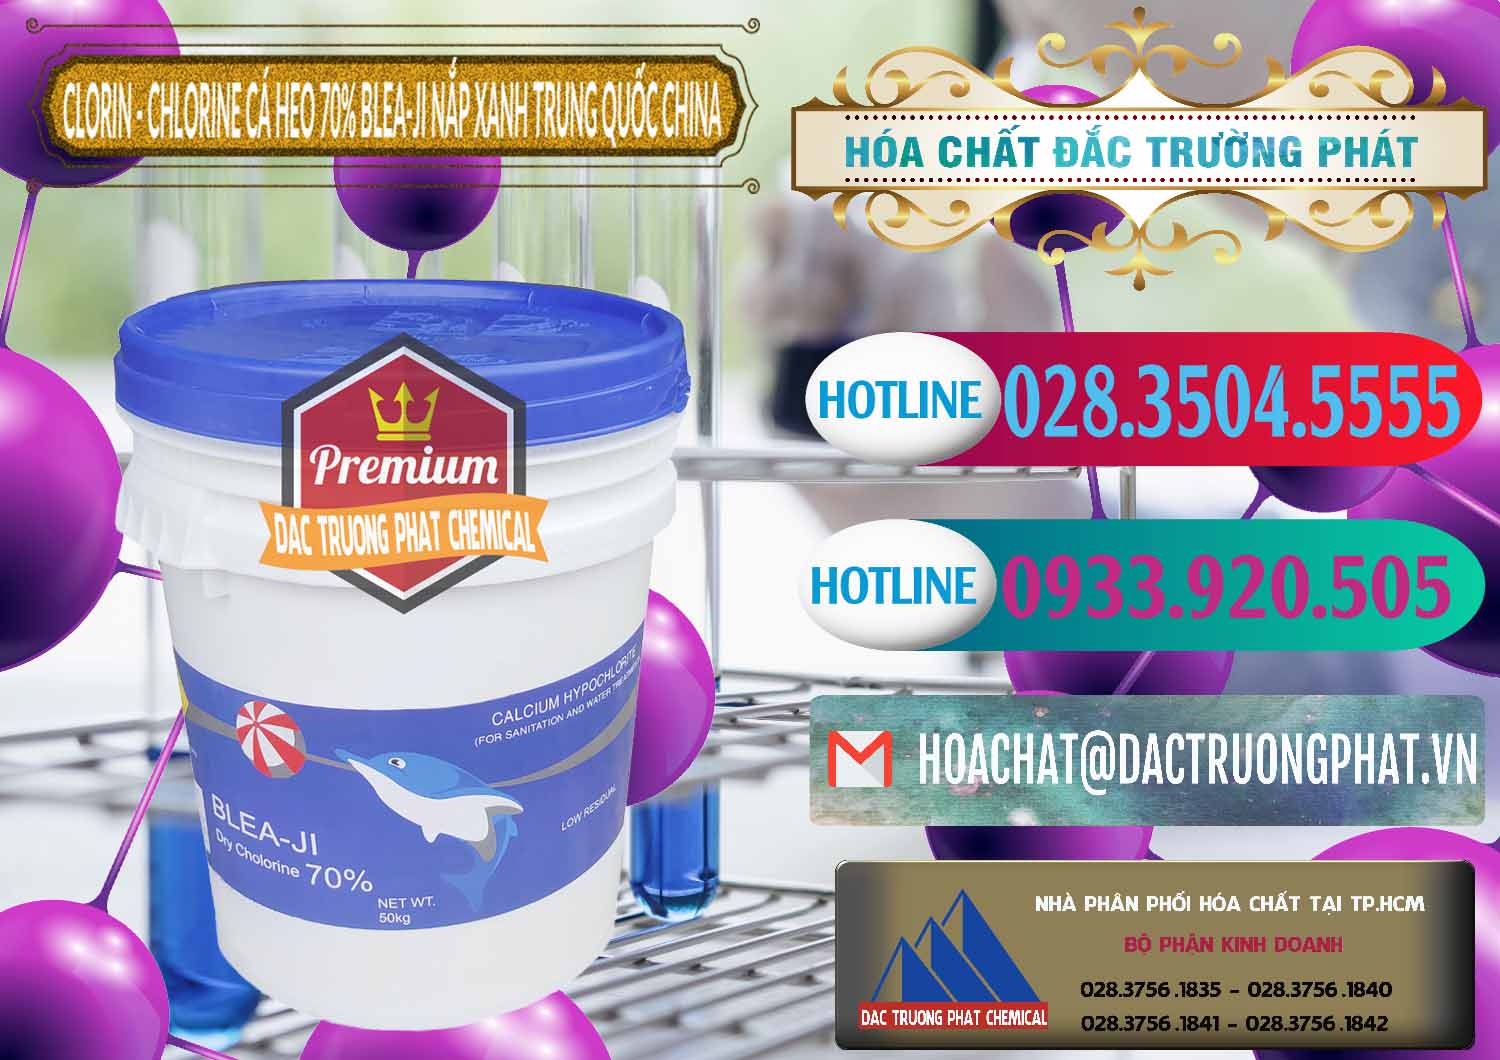 Cty chuyên cung ứng và bán Clorin - Chlorine Cá Heo 70% Cá Heo Blea-Ji Thùng Tròn Nắp Xanh Trung Quốc China - 0208 - Đơn vị cung cấp & bán hóa chất tại TP.HCM - truongphat.vn